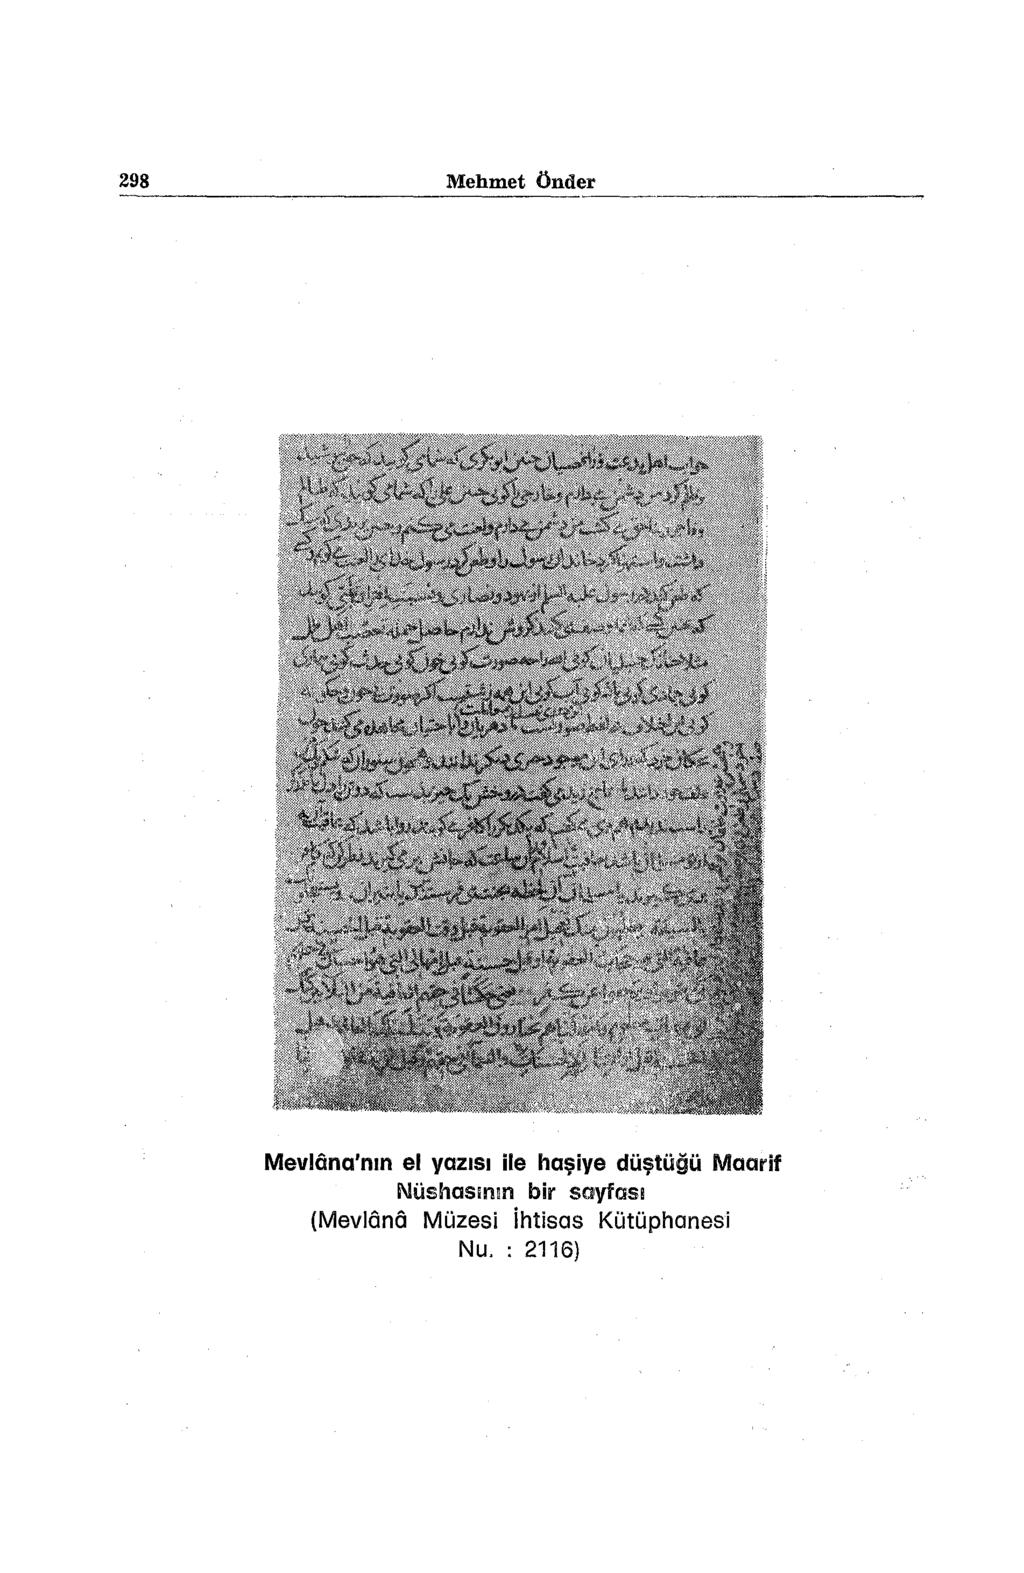 298 Mehmet Önder Mevlana'nın el yazısı ile haşiye düştüğü Maarif